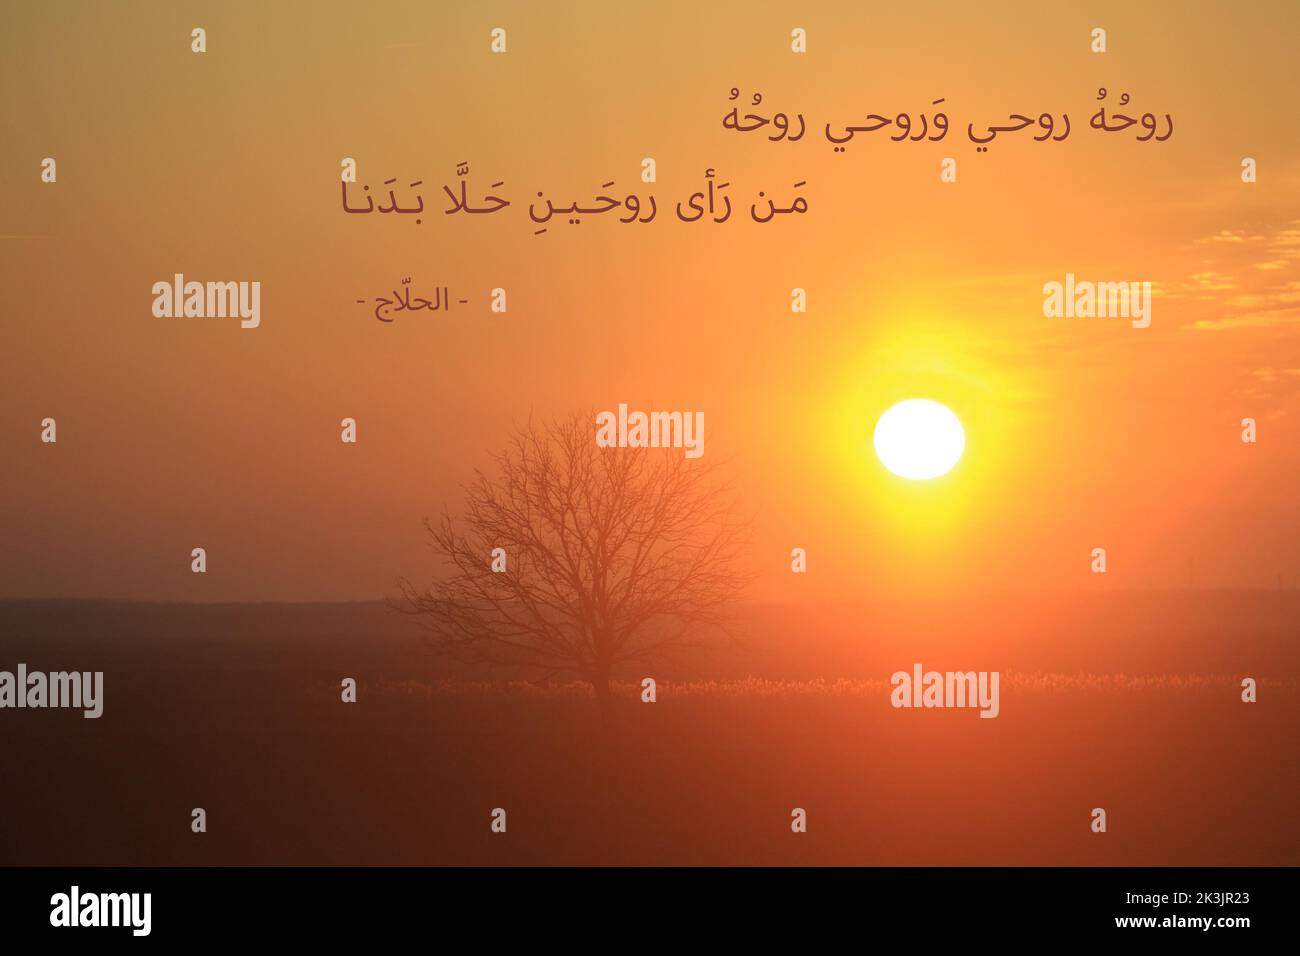 Un verset d'un poème d'Al-Hallaj, un mystique soufi qui a été condamné pour hérésie et est mort en 922 après J.-C., sur une scène de coucher de soleil. Banque D'Images